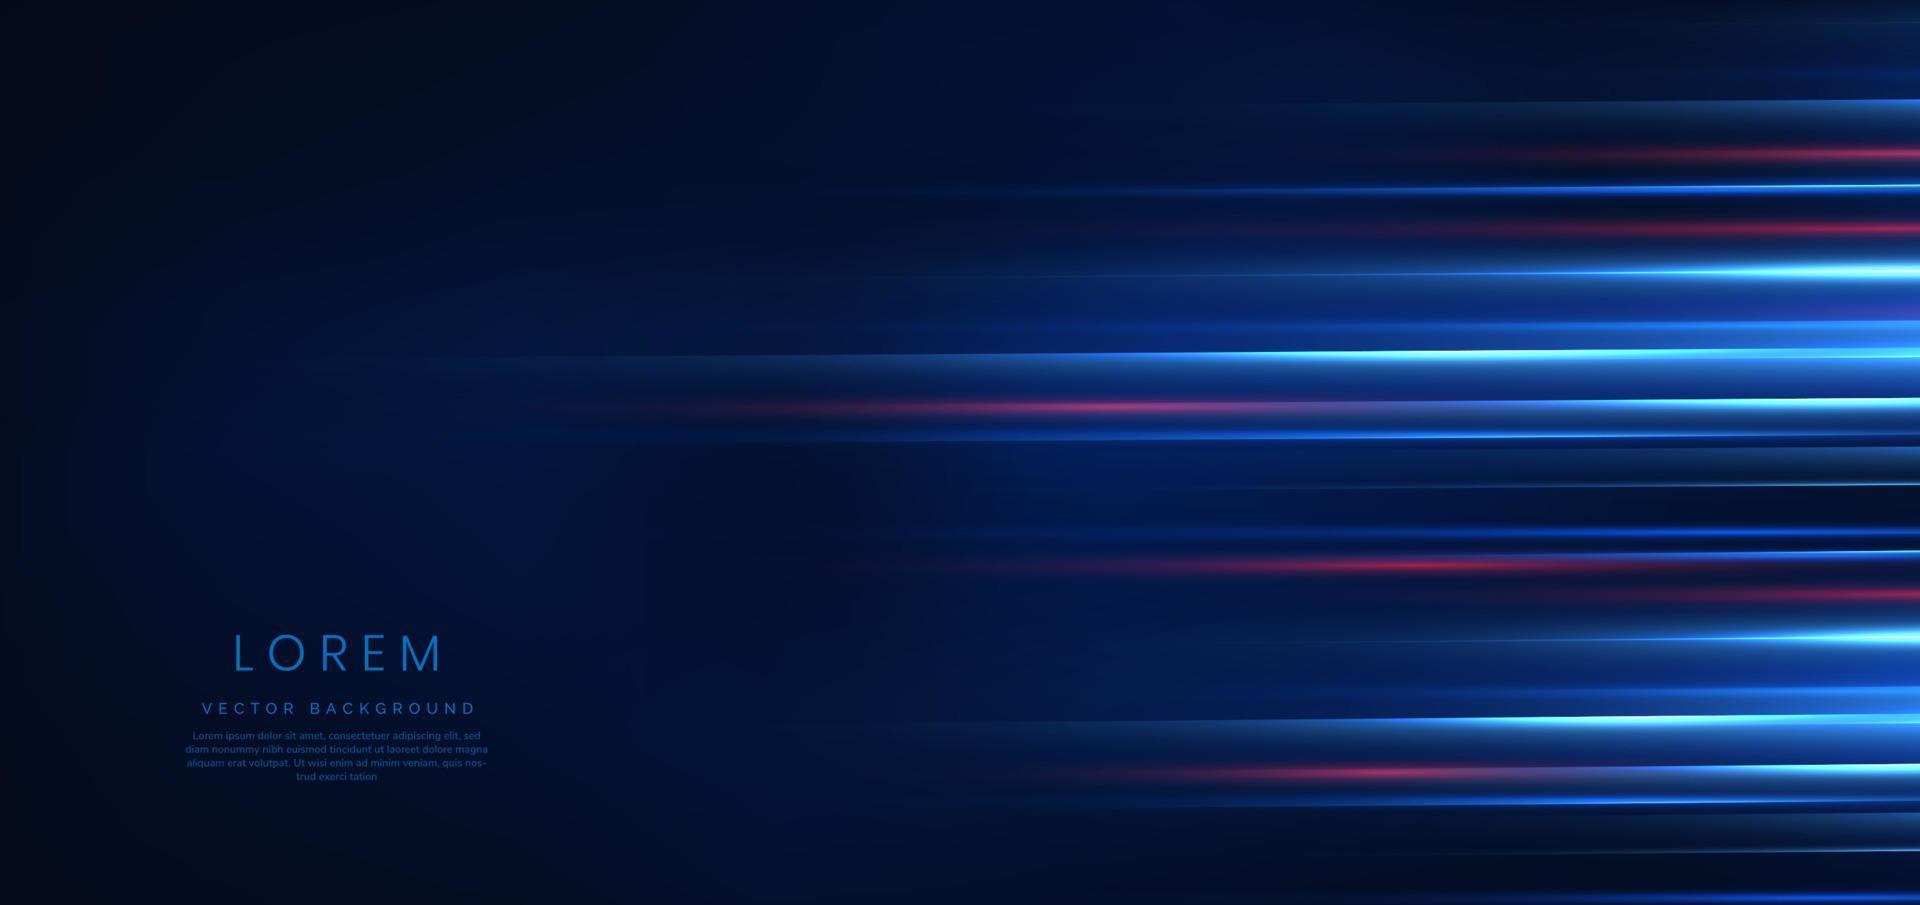 technologie abstraite lignes lumineuses bleues et rouges rougeoyantes futuristes avec effet de flou de mouvement de vitesse sur fond bleu foncé. vecteur